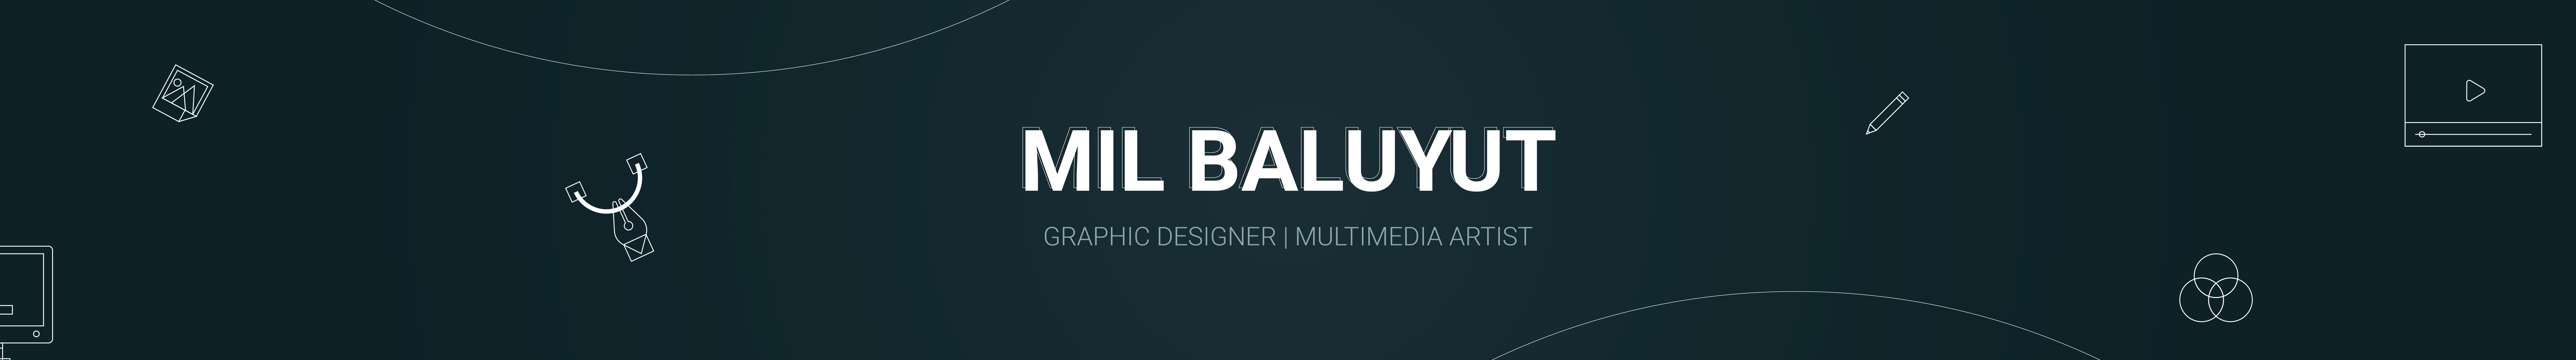 Bannière de profil de Mil Baluyut